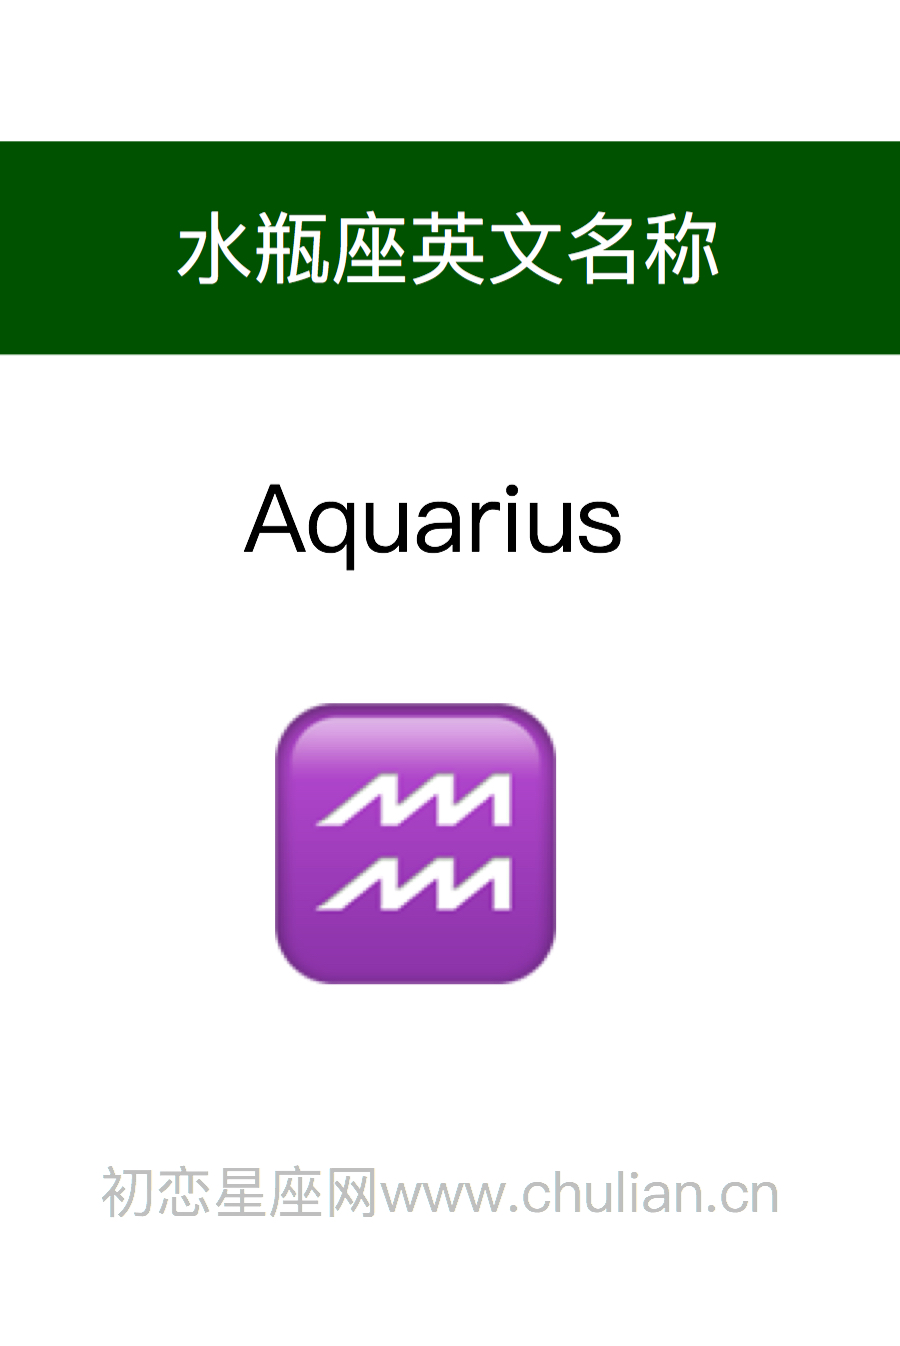 水瓶座英文名称：Aquarius